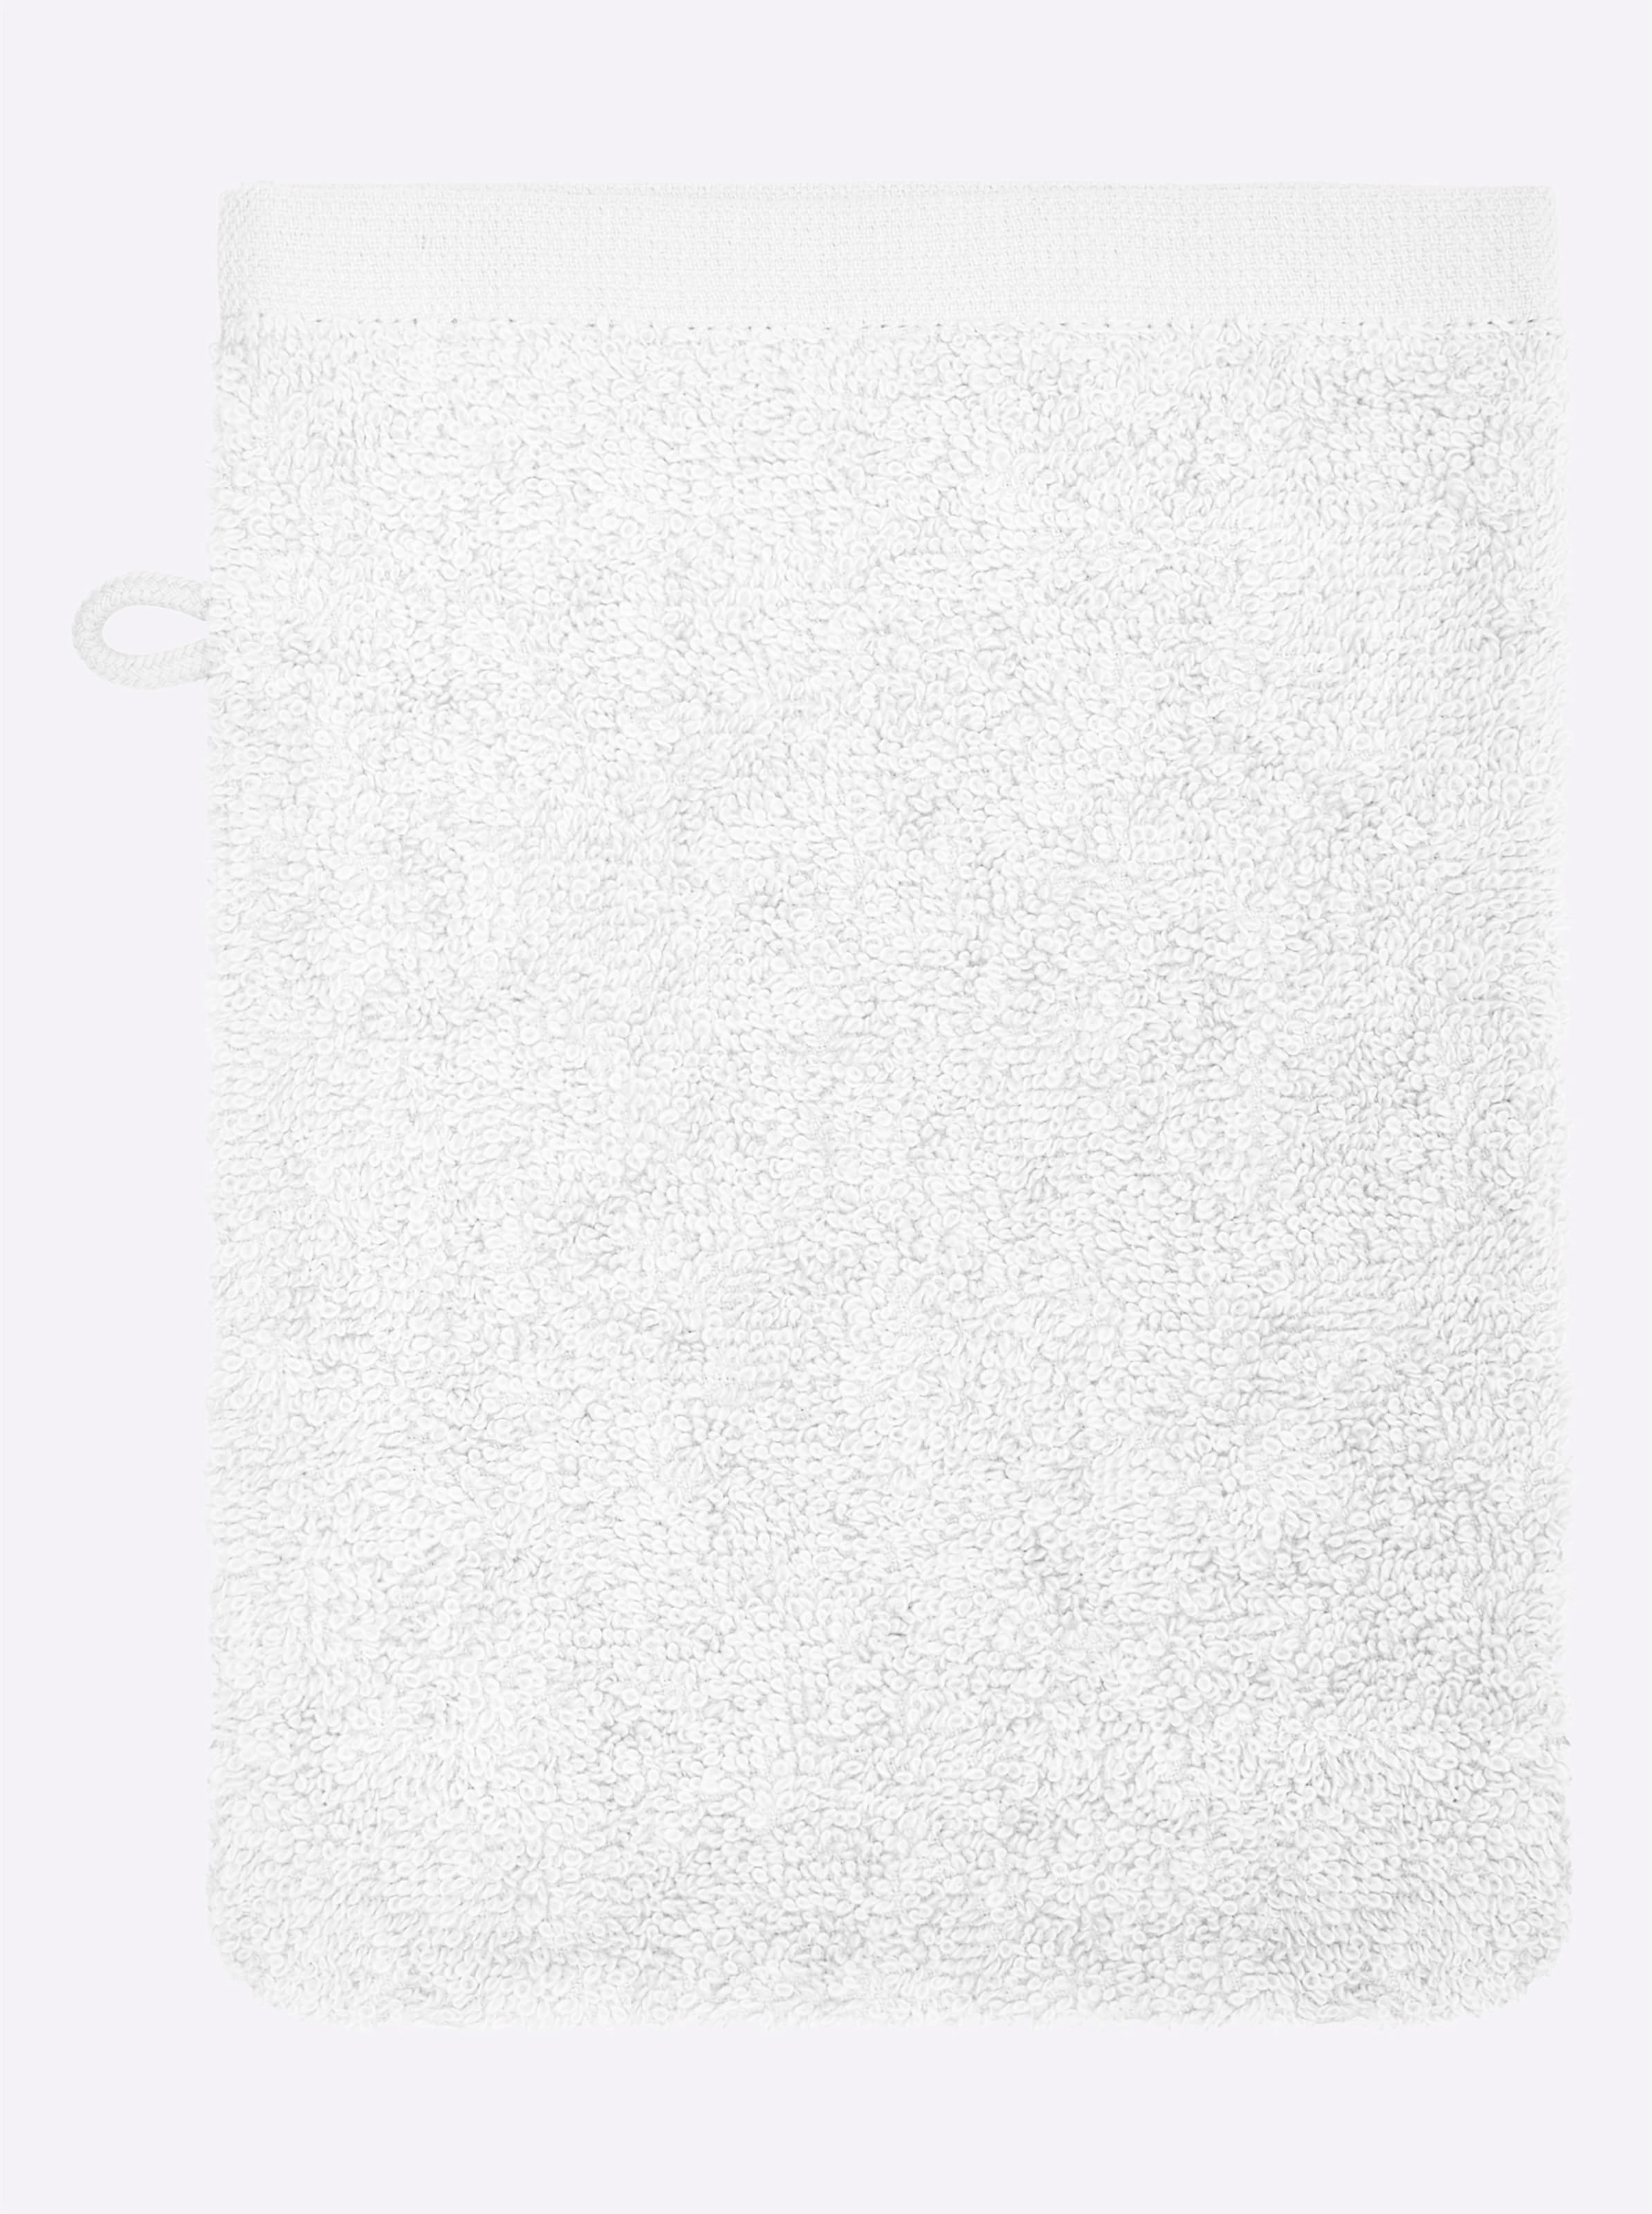 Gramm von günstig Kaufen-Handtuch in weiß von wäschepur. Handtuch in weiß von wäschepur <![CDATA[Das ornamentale Dessin lässt dieses Handtuch-Programm sehr edel wirken! Wunderbar weicher Walkfrottier in Luxus-Qualität. Unterstützt die Initiative Cotton made